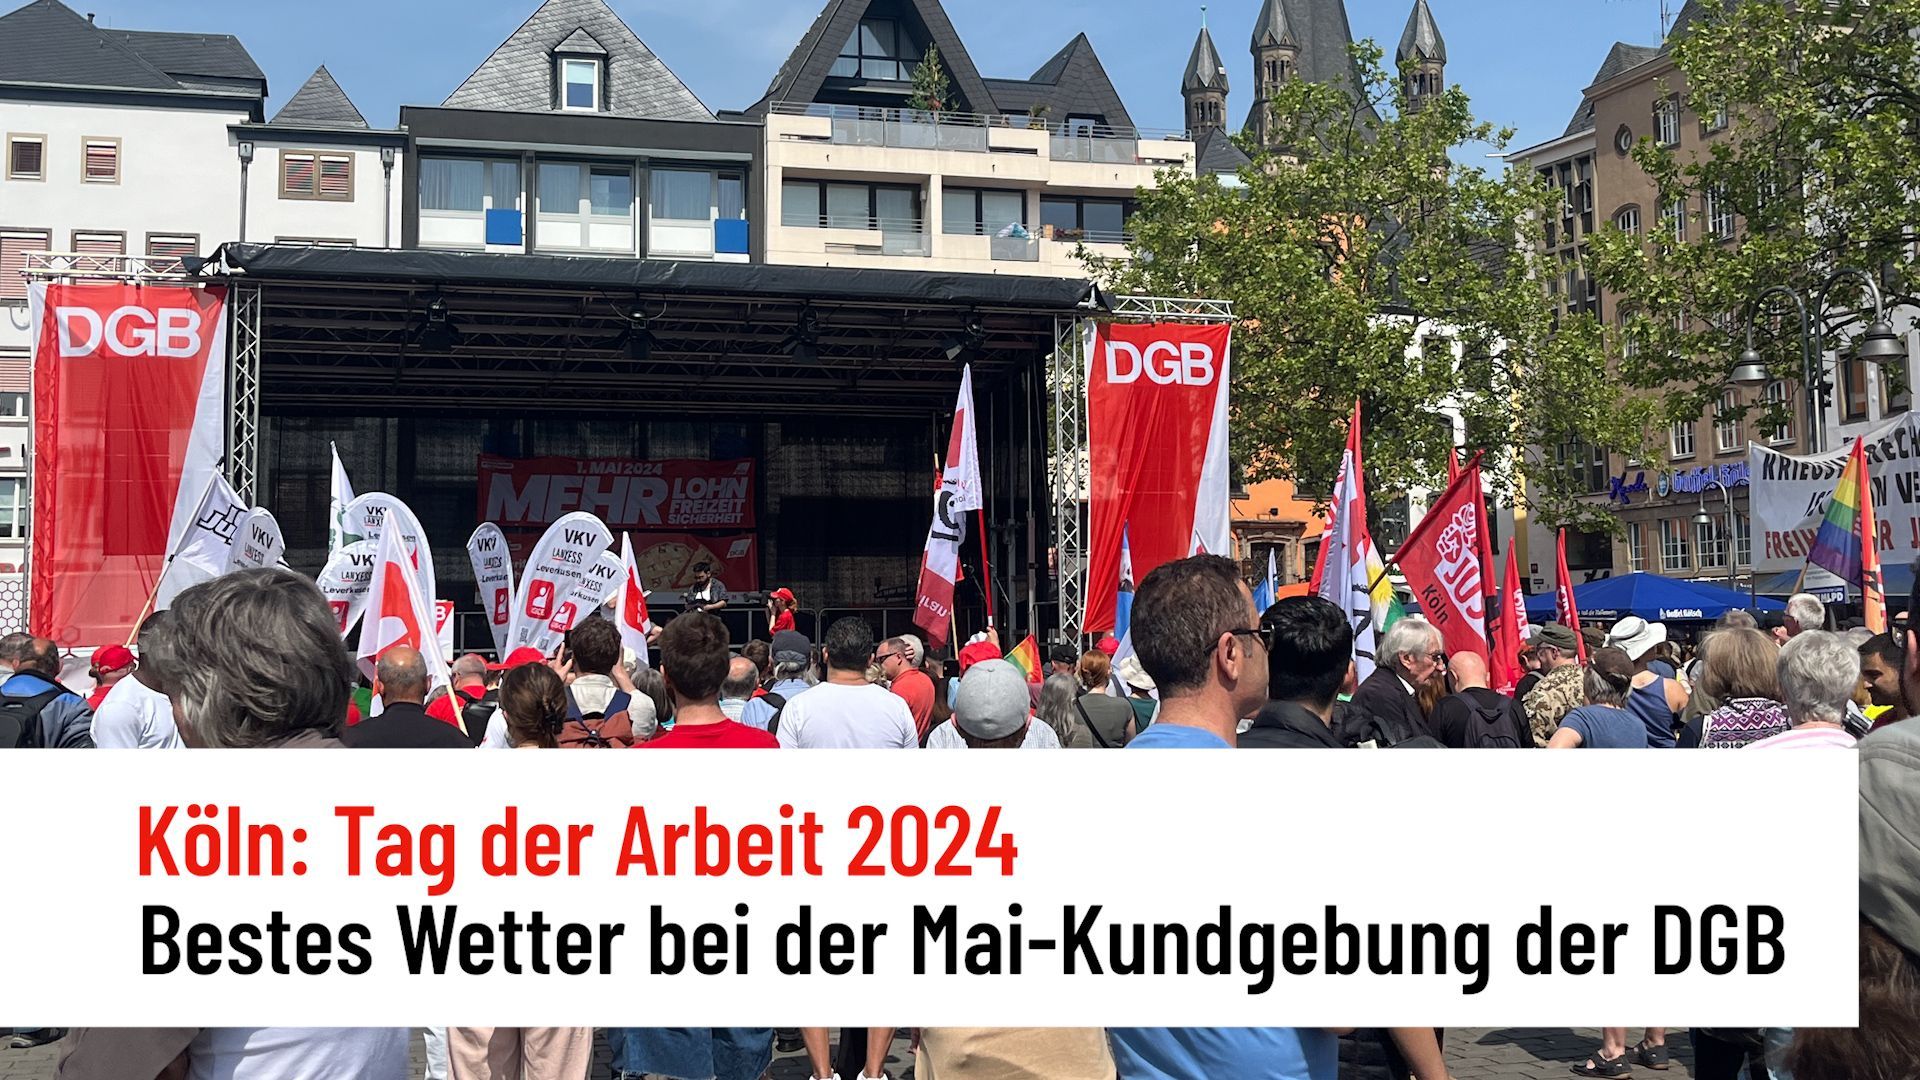 Köln: Bestes Wetter bei der Mai-Kundgebung der DGB am Tag der Arbeit 2024